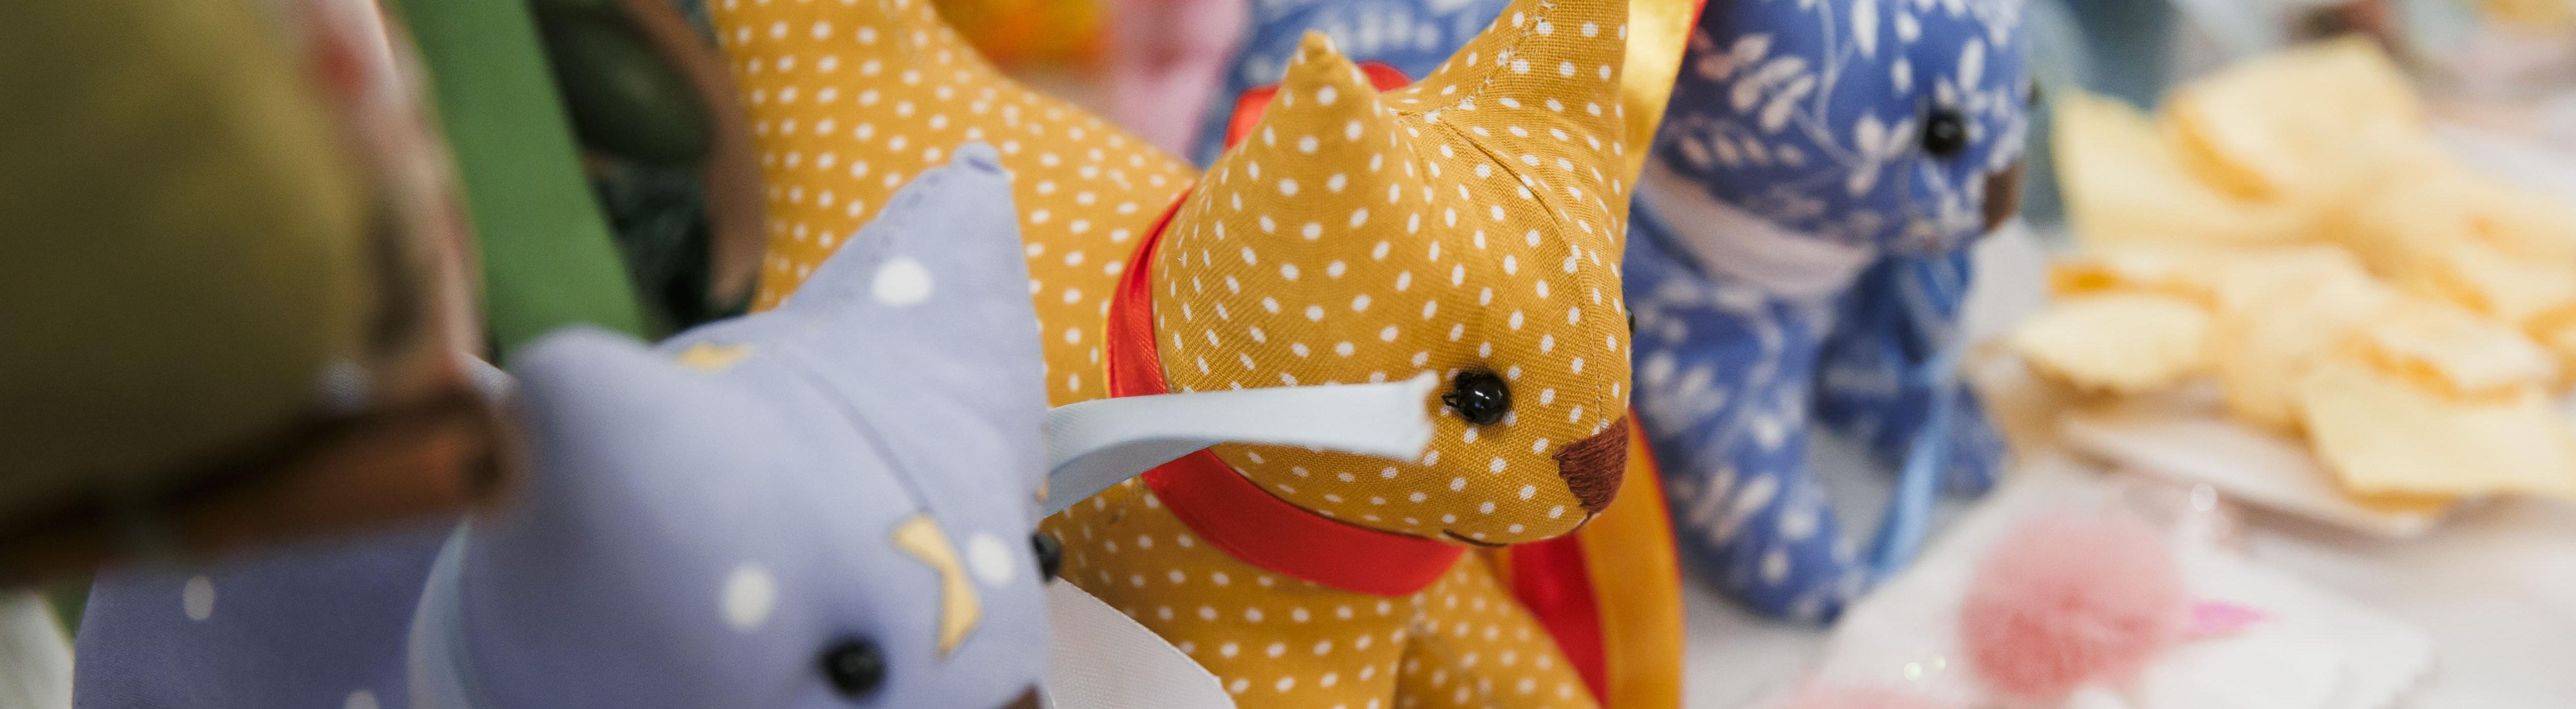 Волонтеры шьют игрушки из ненужных тканей в помощь детям с ОВЗ 